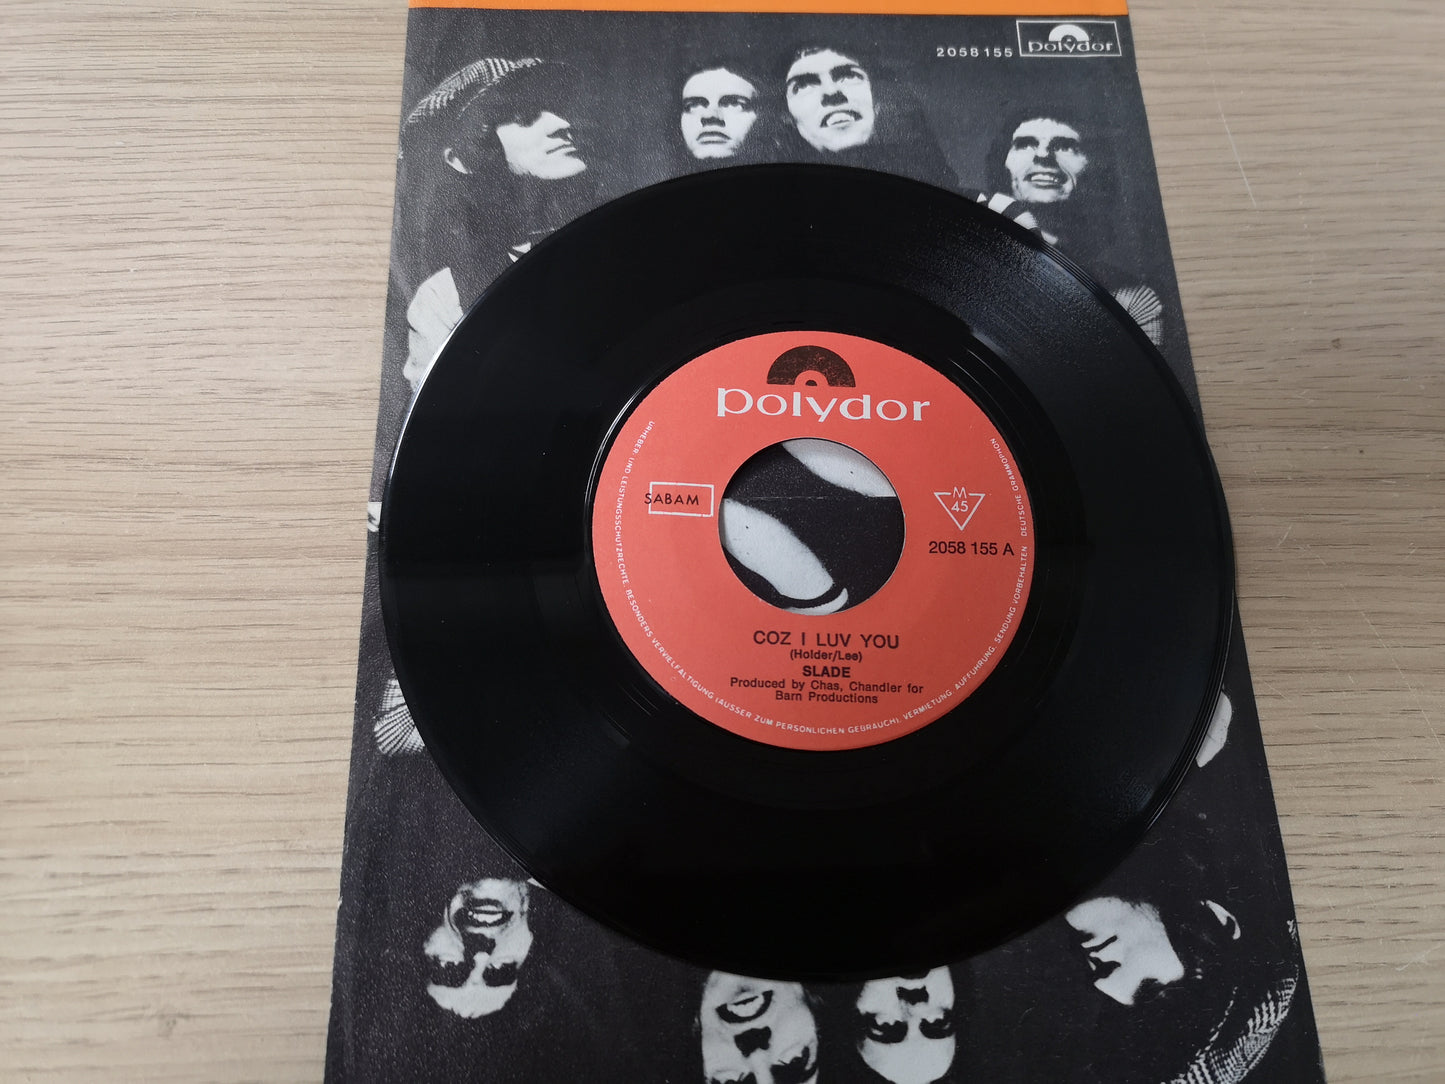 Slade "Coz I Luv You" Orig Belgium 1971 EX/EX (7" Single)